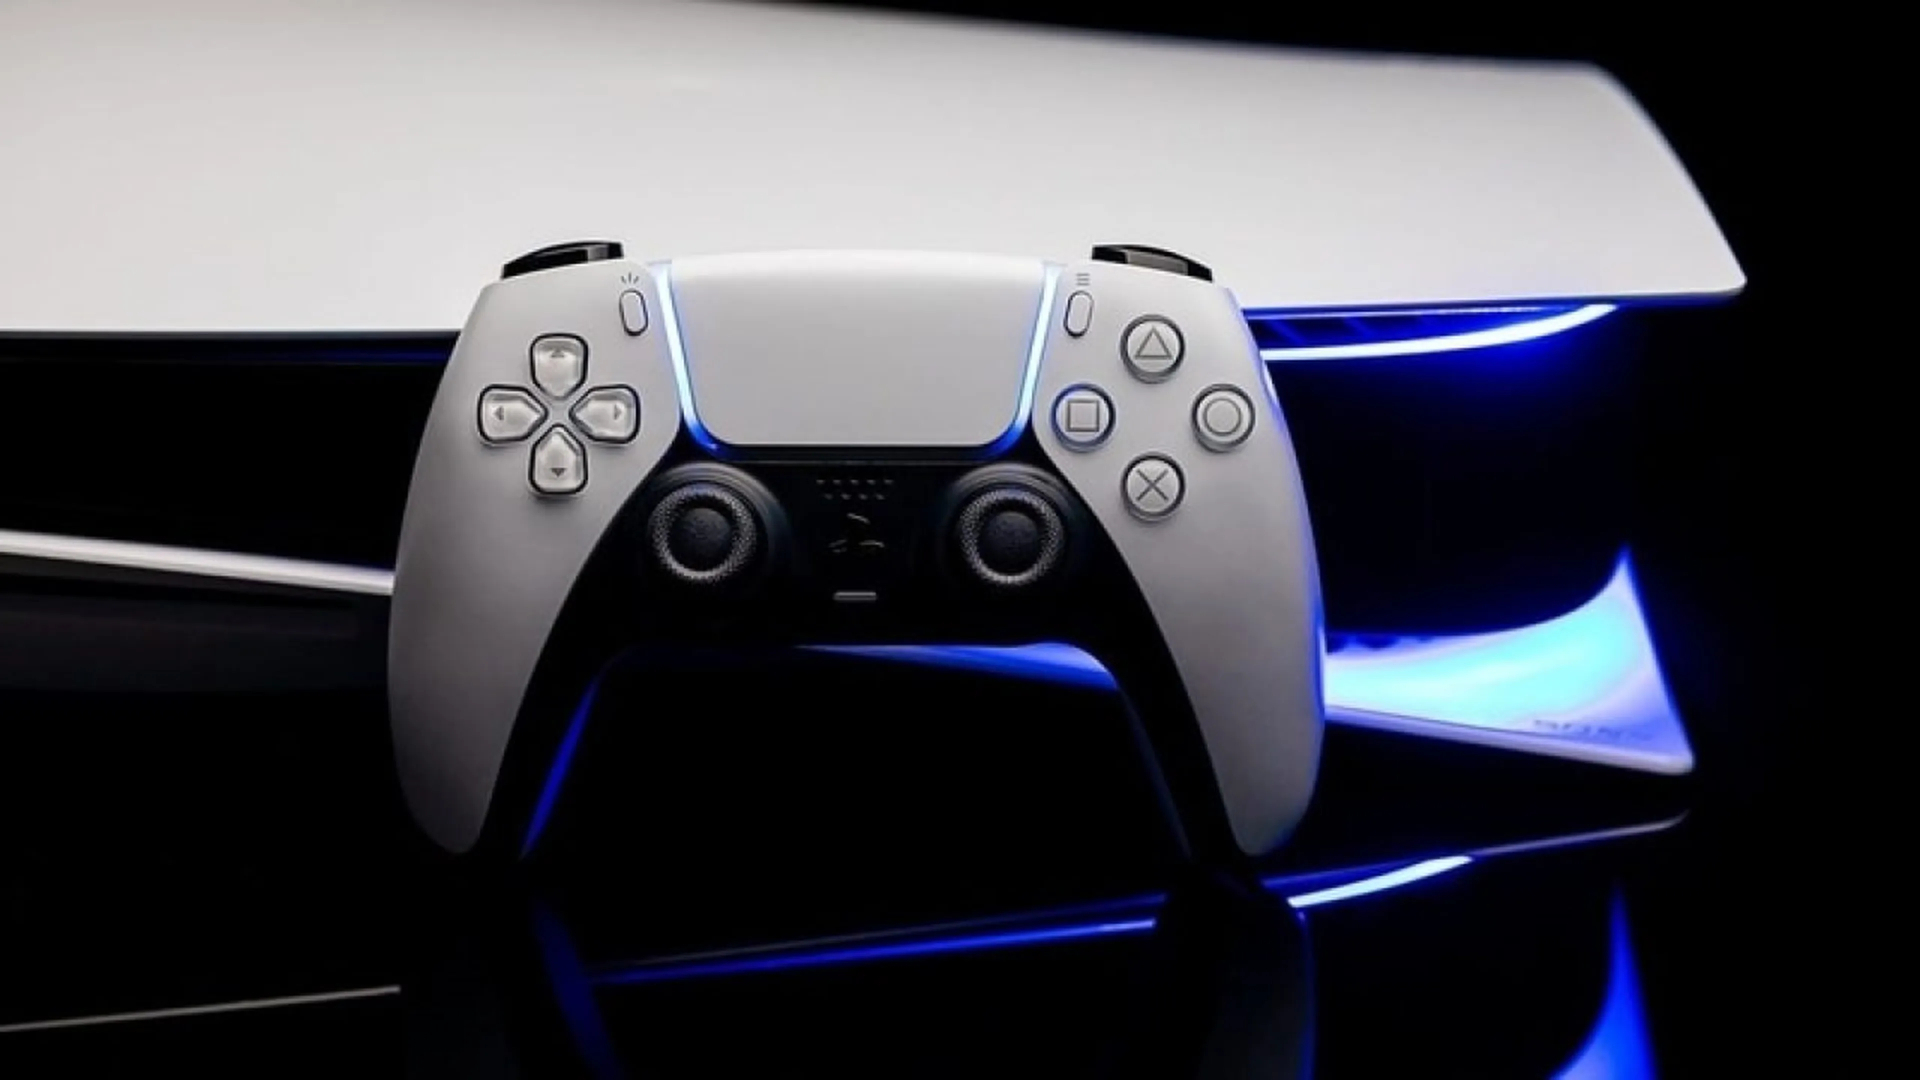 Sony може в серпні представити ігрову консоль PlayStation 5 Slim зі знімним дисководом